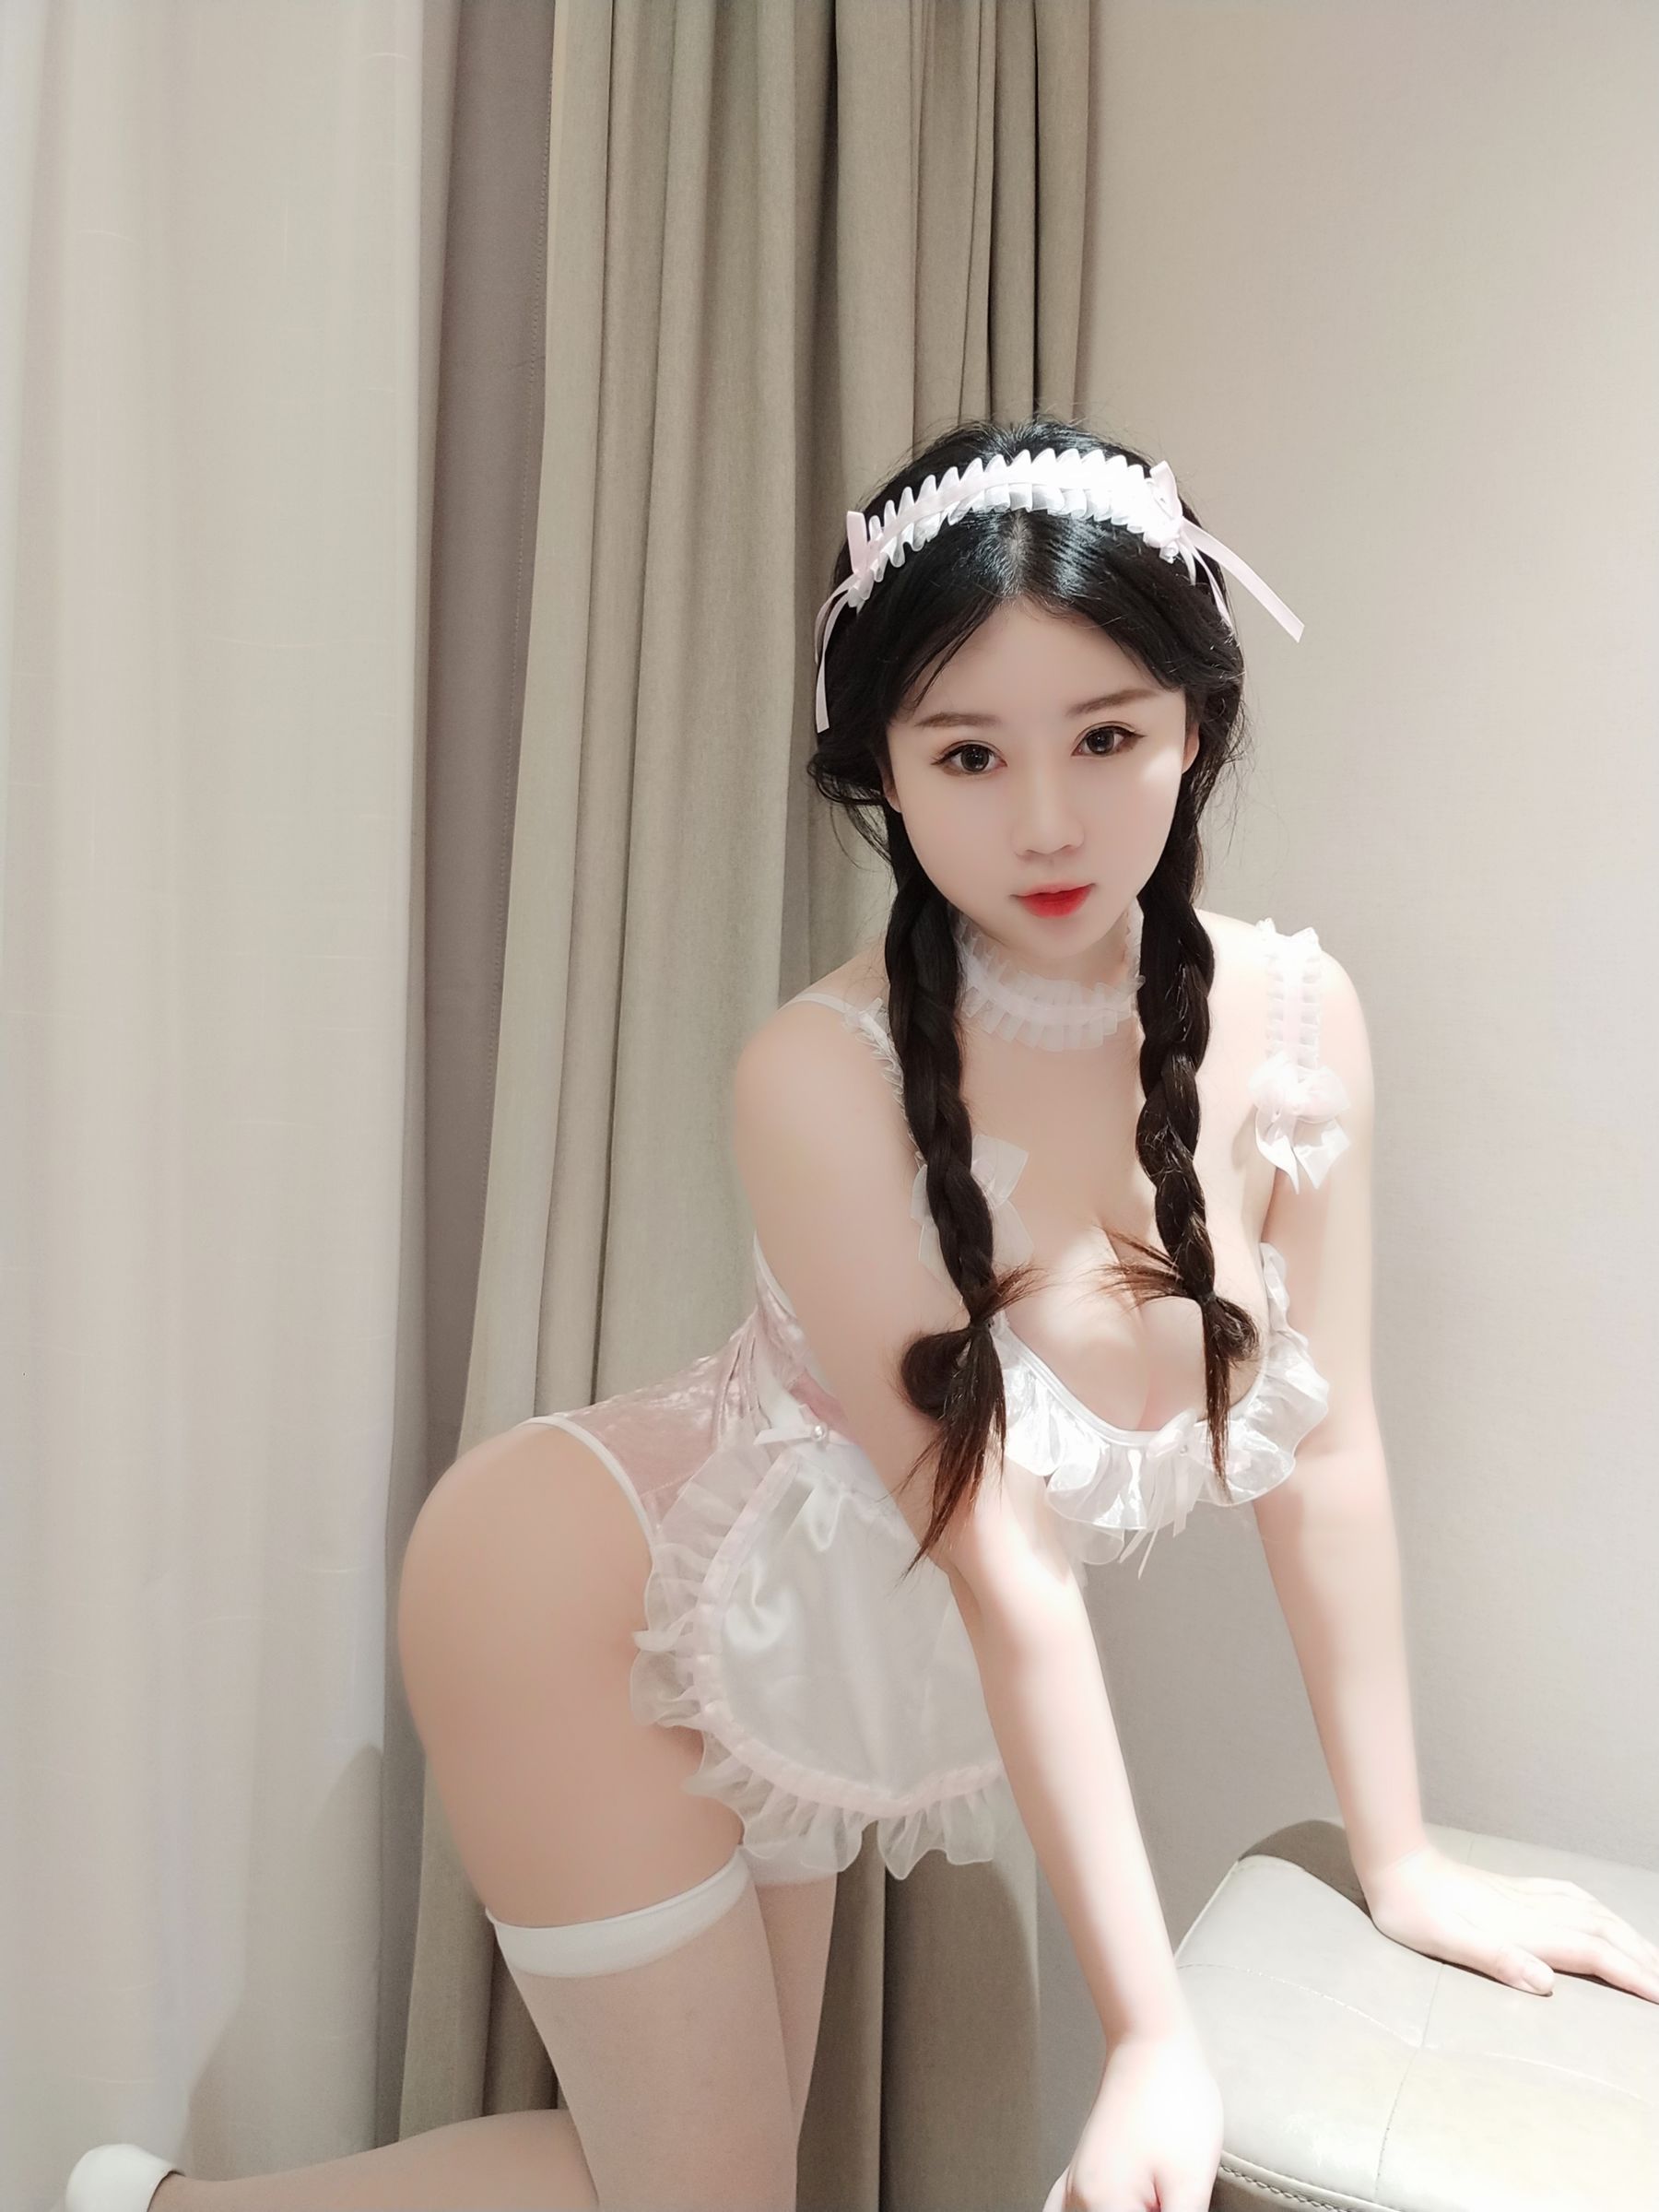 [Cosplay] Peach Girl is Yi Jiang - Winter Girlfriend